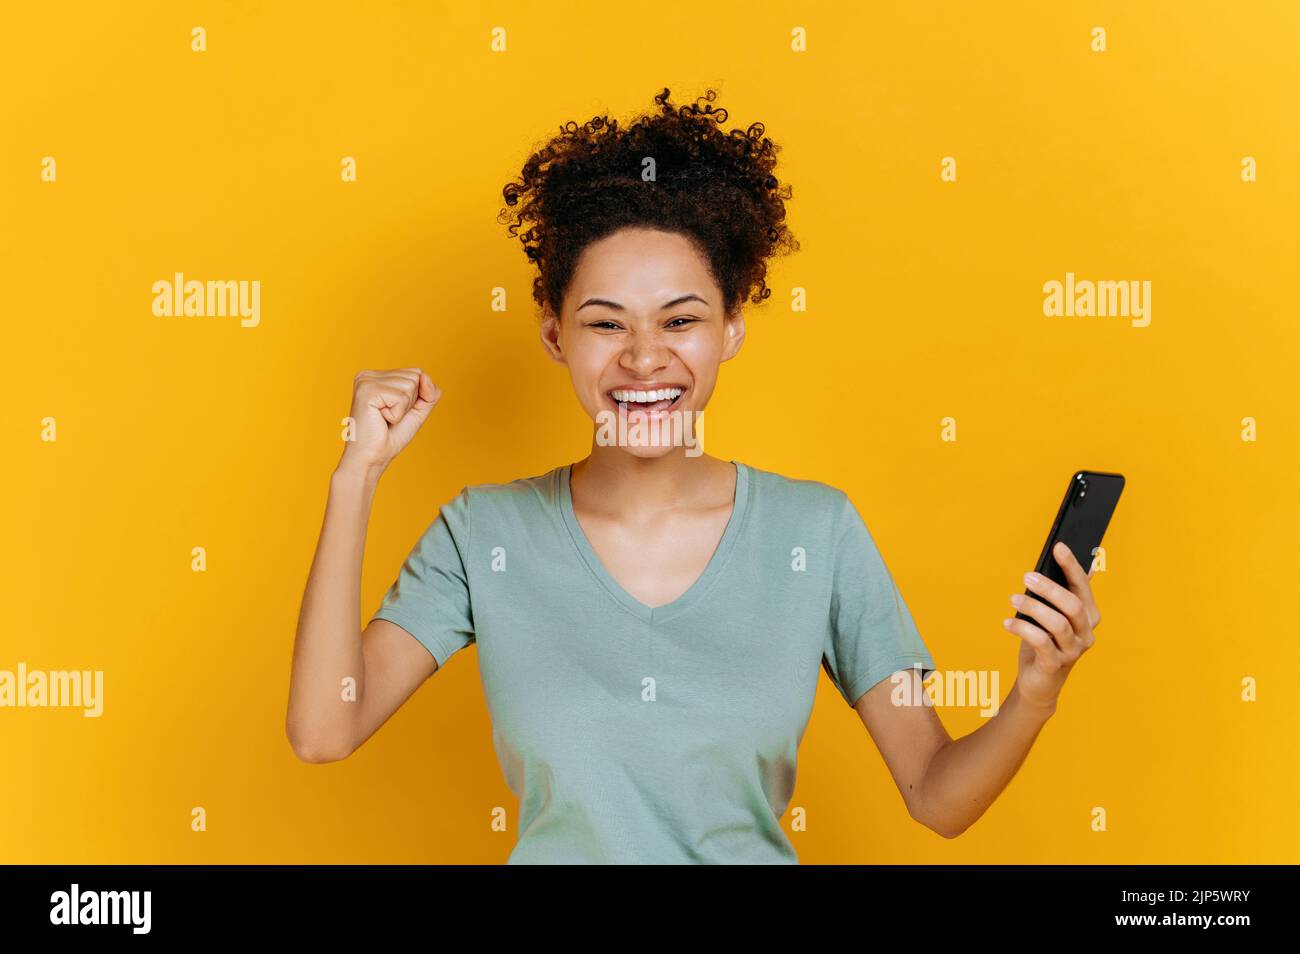 Sehr fröhliches afroamerikanisches Mädchen hält Smartphone, erhalten unerwartete Nachrichten, jubeln Lotterie gewinnen, steht auf isoliertem orangefarbenem Hintergrund, fröhlicher Gesichtsausdruck, toothy Lächeln, gestikulieren mit Faust Stockfoto